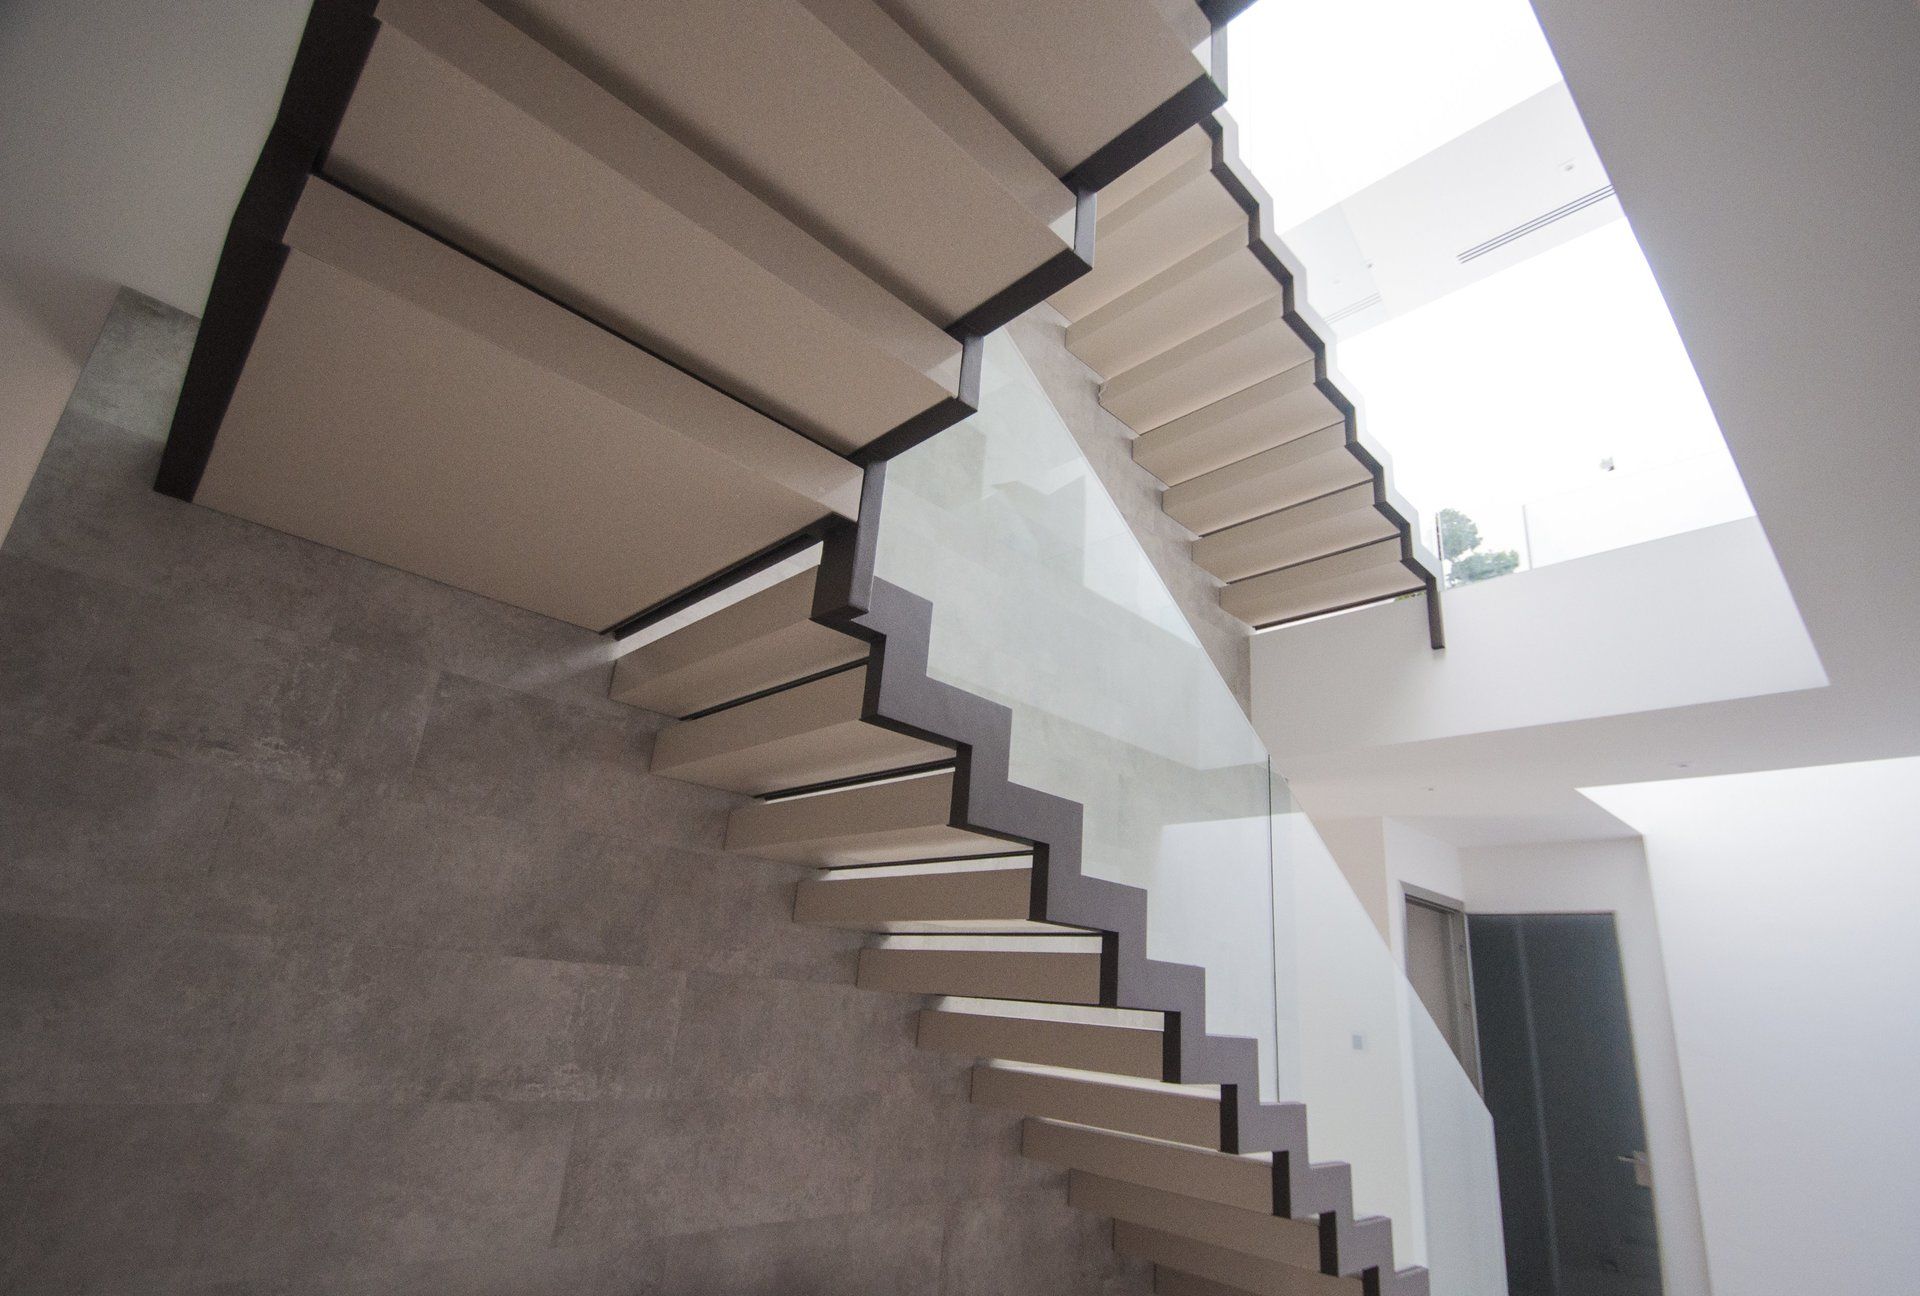 Escaleras de diseño en vivienda unifamiliar moderna en Almeria. Arquitectura moderna en Almeria. Interiorismo Almeria.